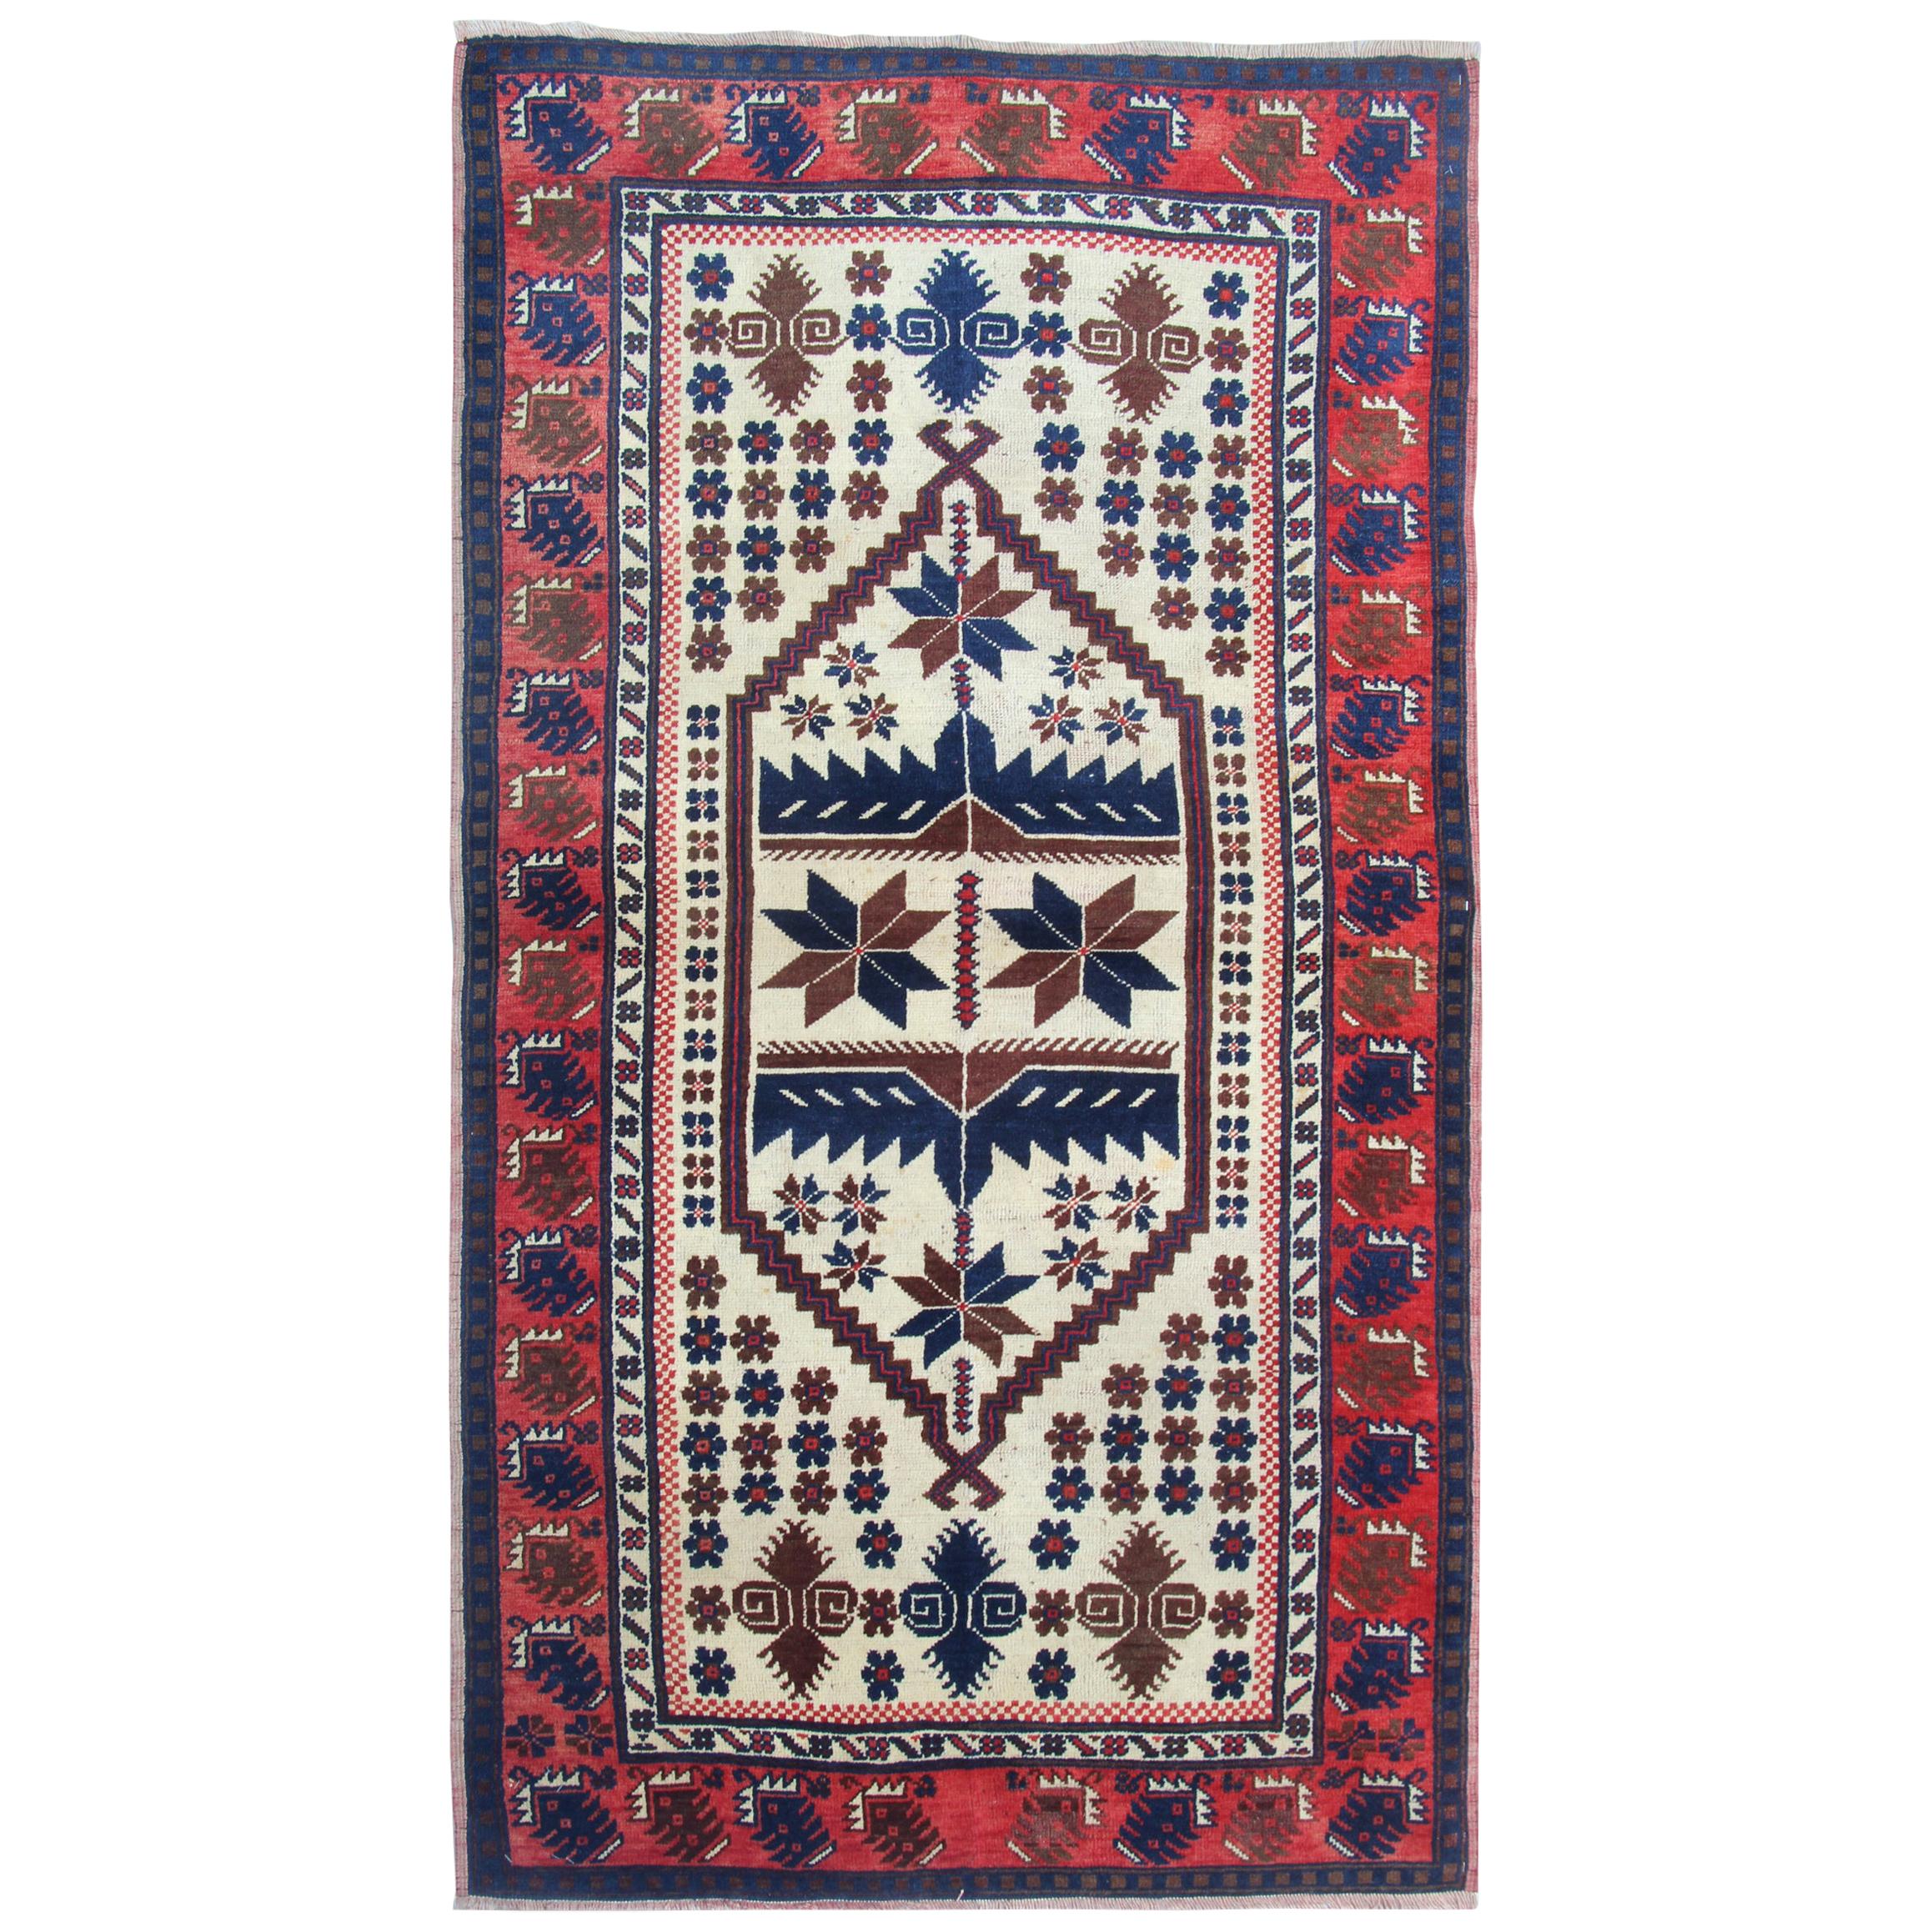 Handgefertigte Vintage-Teppiche, geometrischer orientalischer rot-beigefarbener Teppich